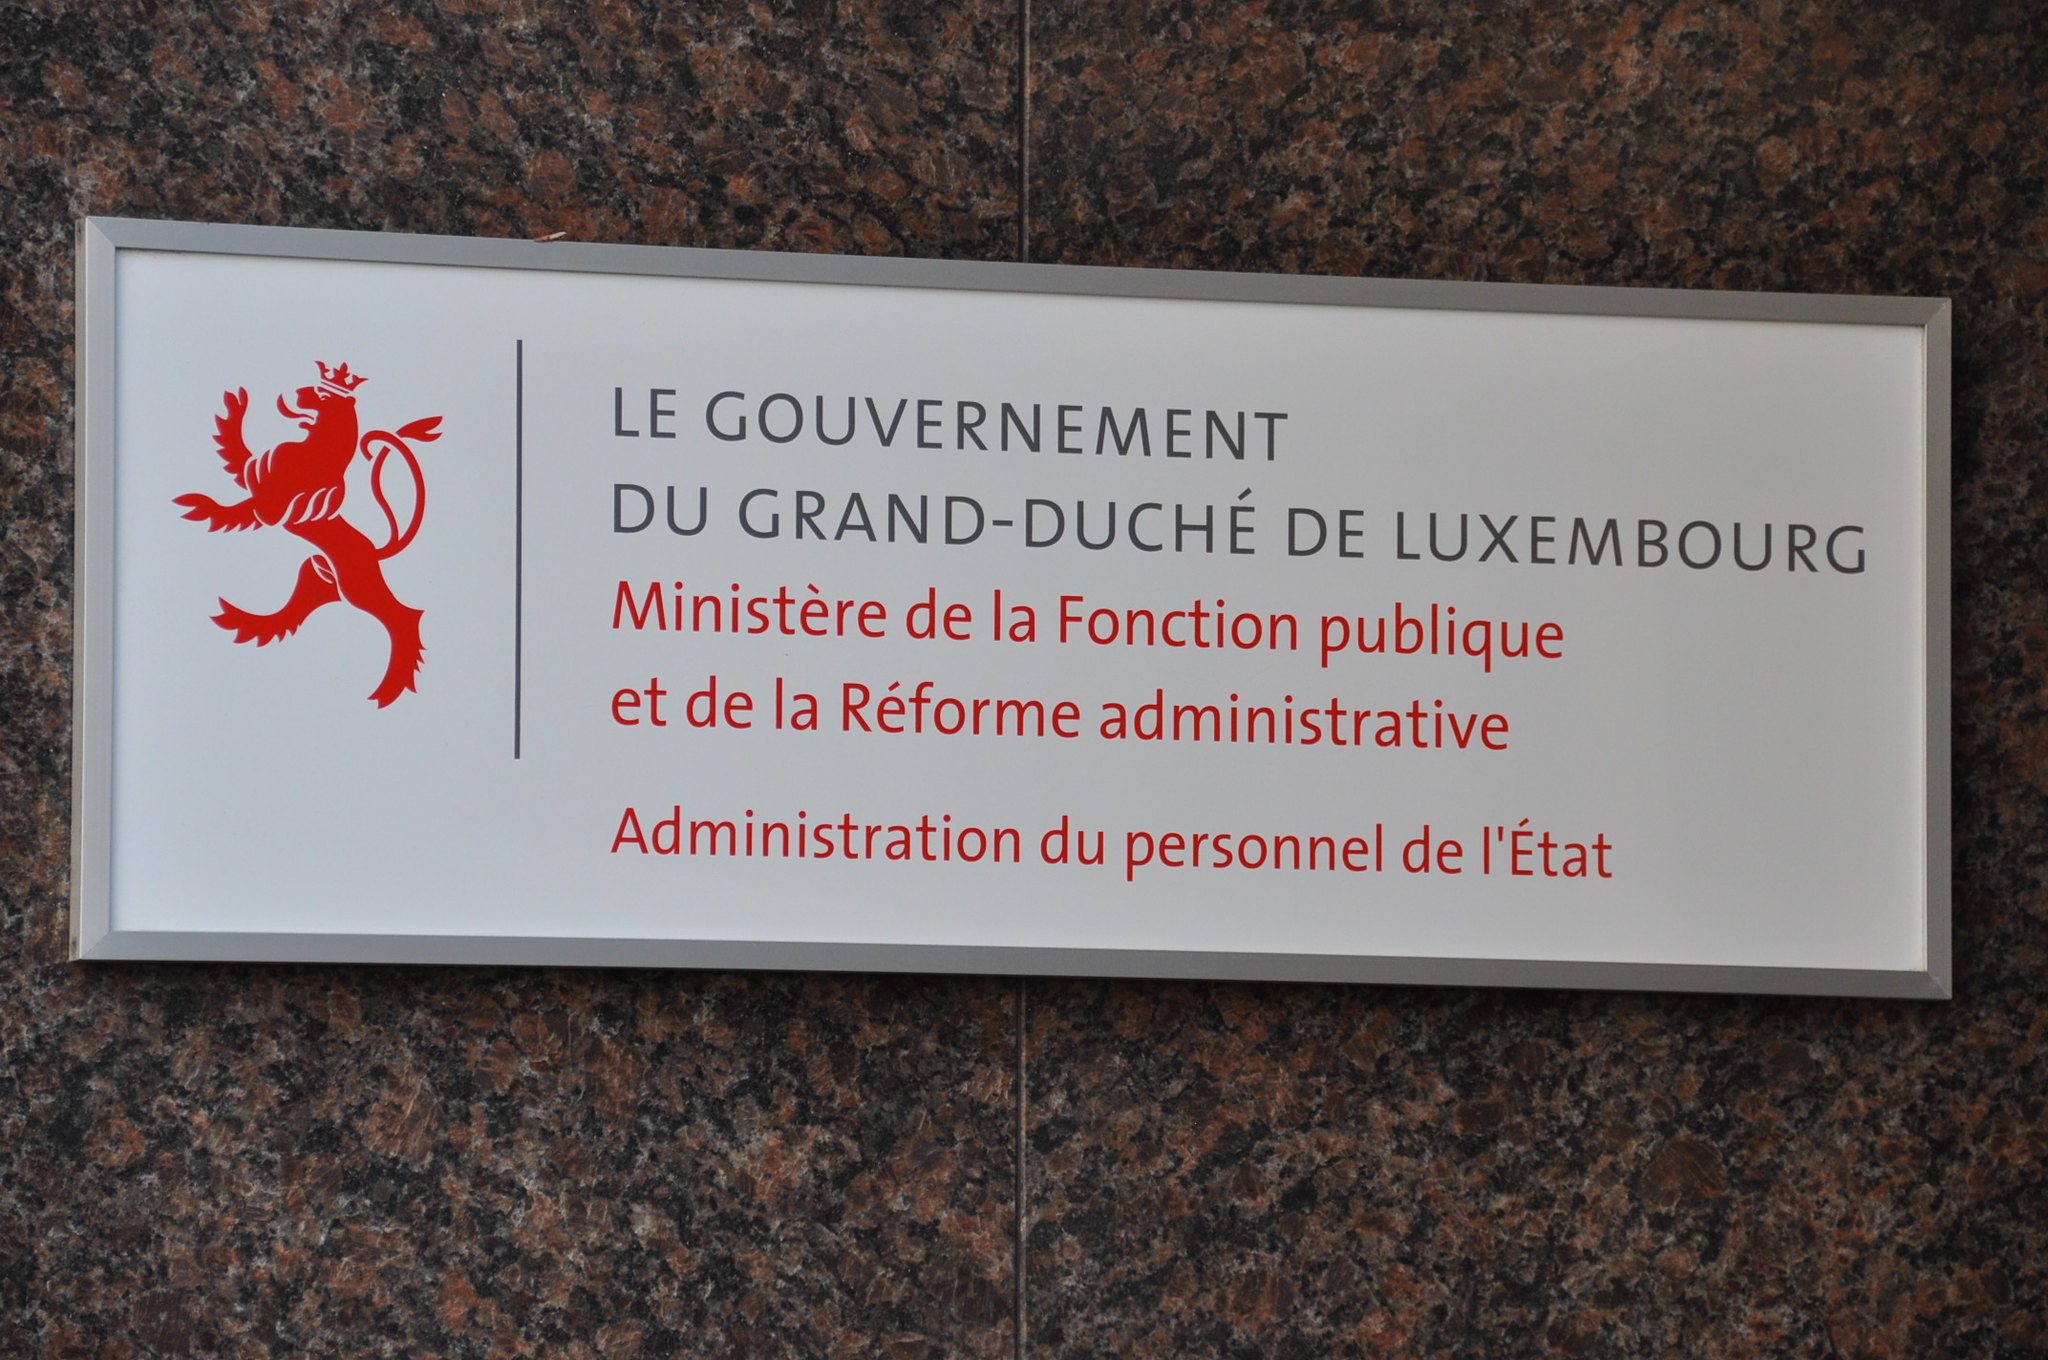 © Chambre des Députés, Ministère de la Fonction publique – Flickr.com